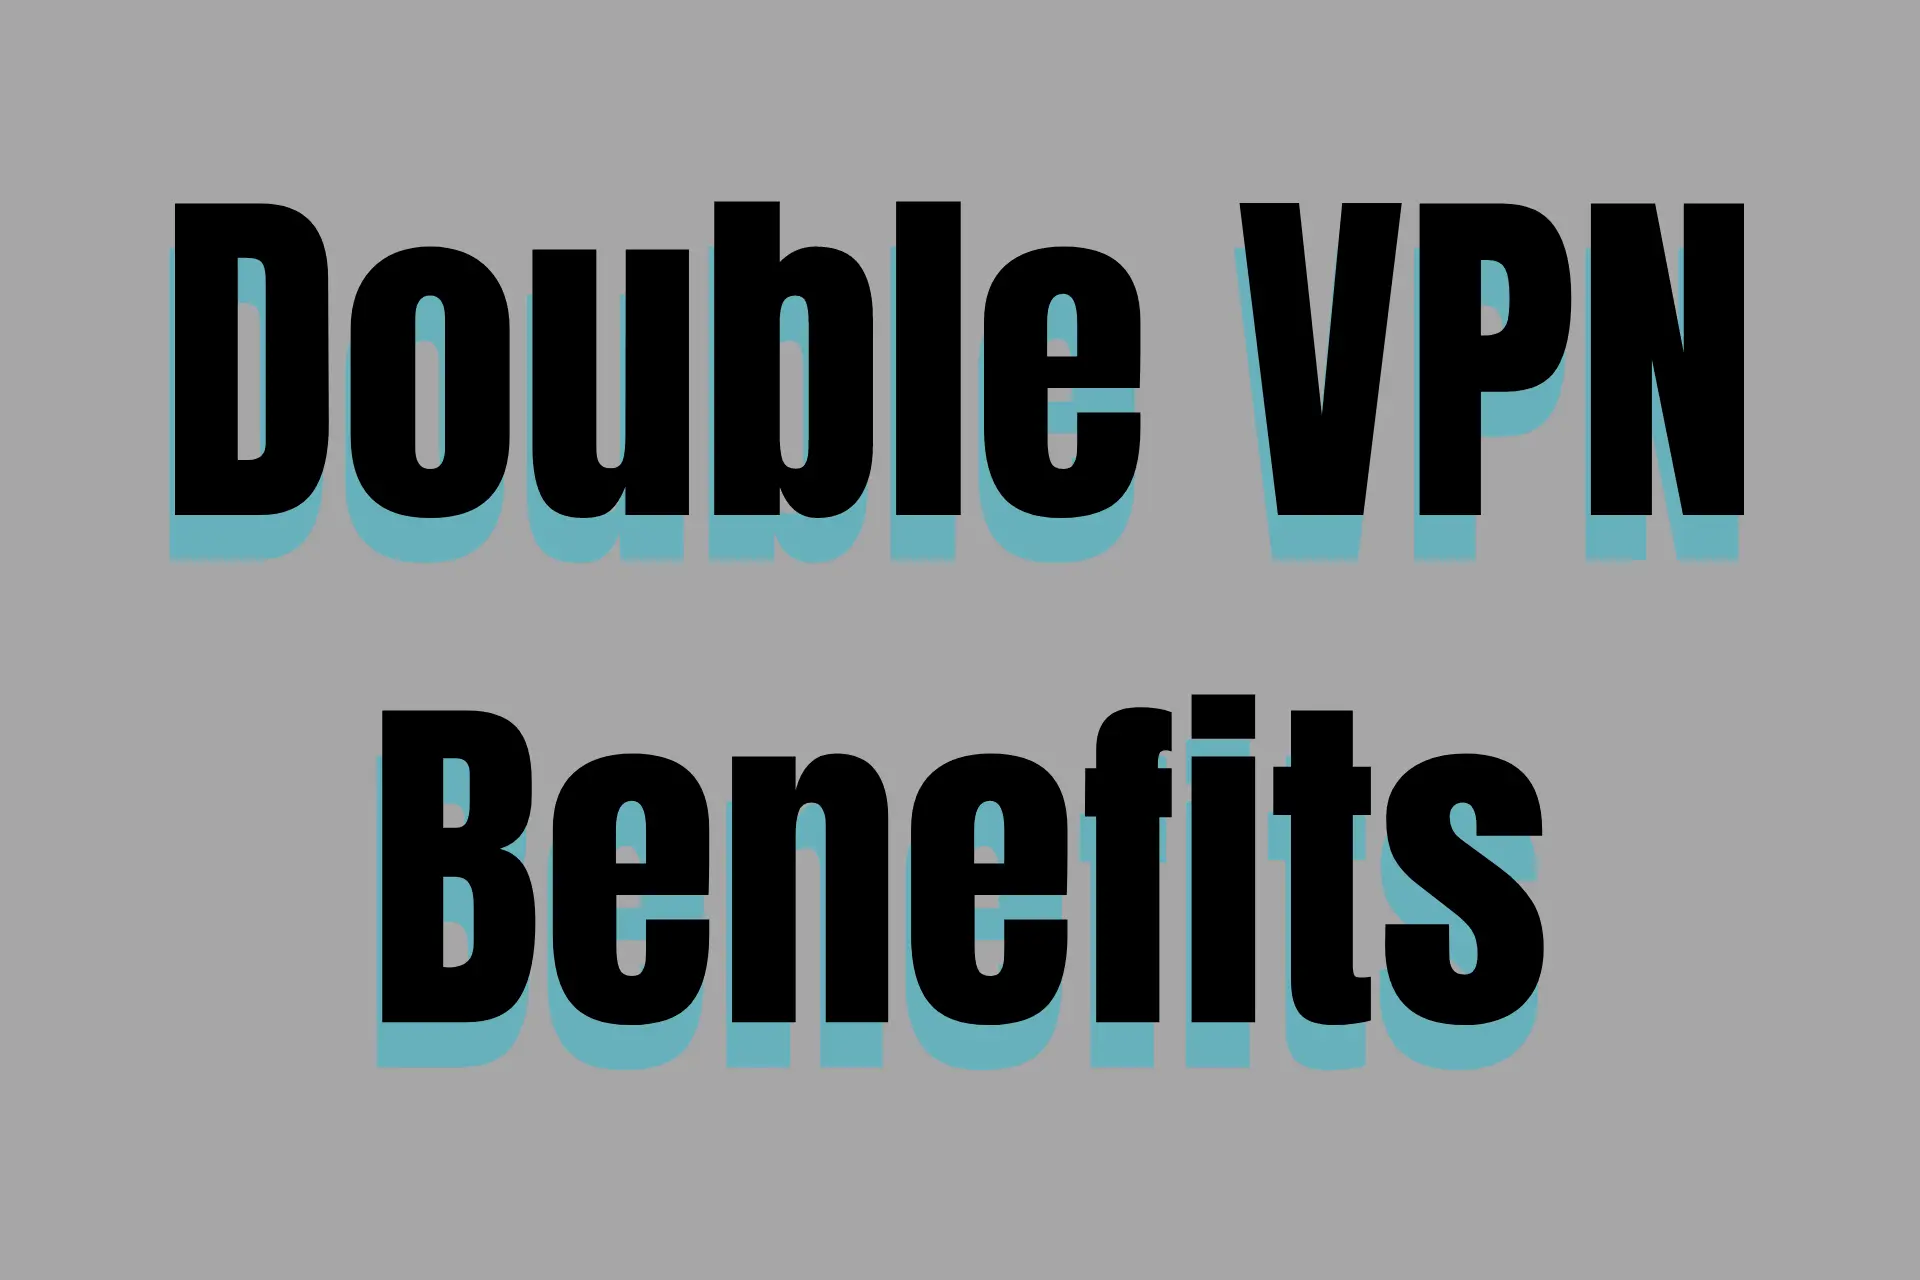 Double VPN benefits